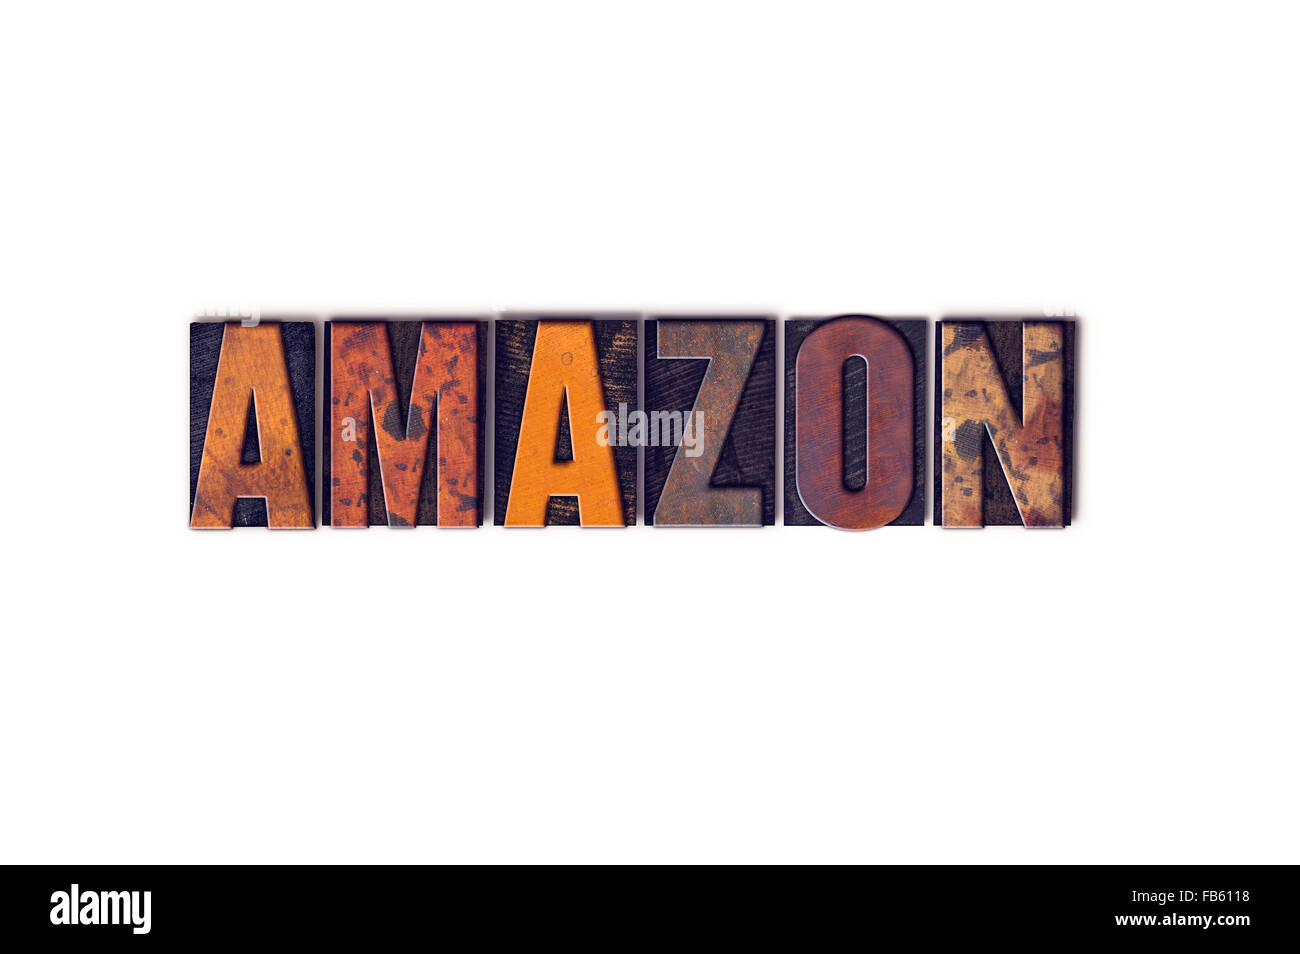 Das Wort "Amazon" geschrieben in isolierten Vintage Holz Buchdruck Typ auf einem weißen Hintergrund. Stockfoto